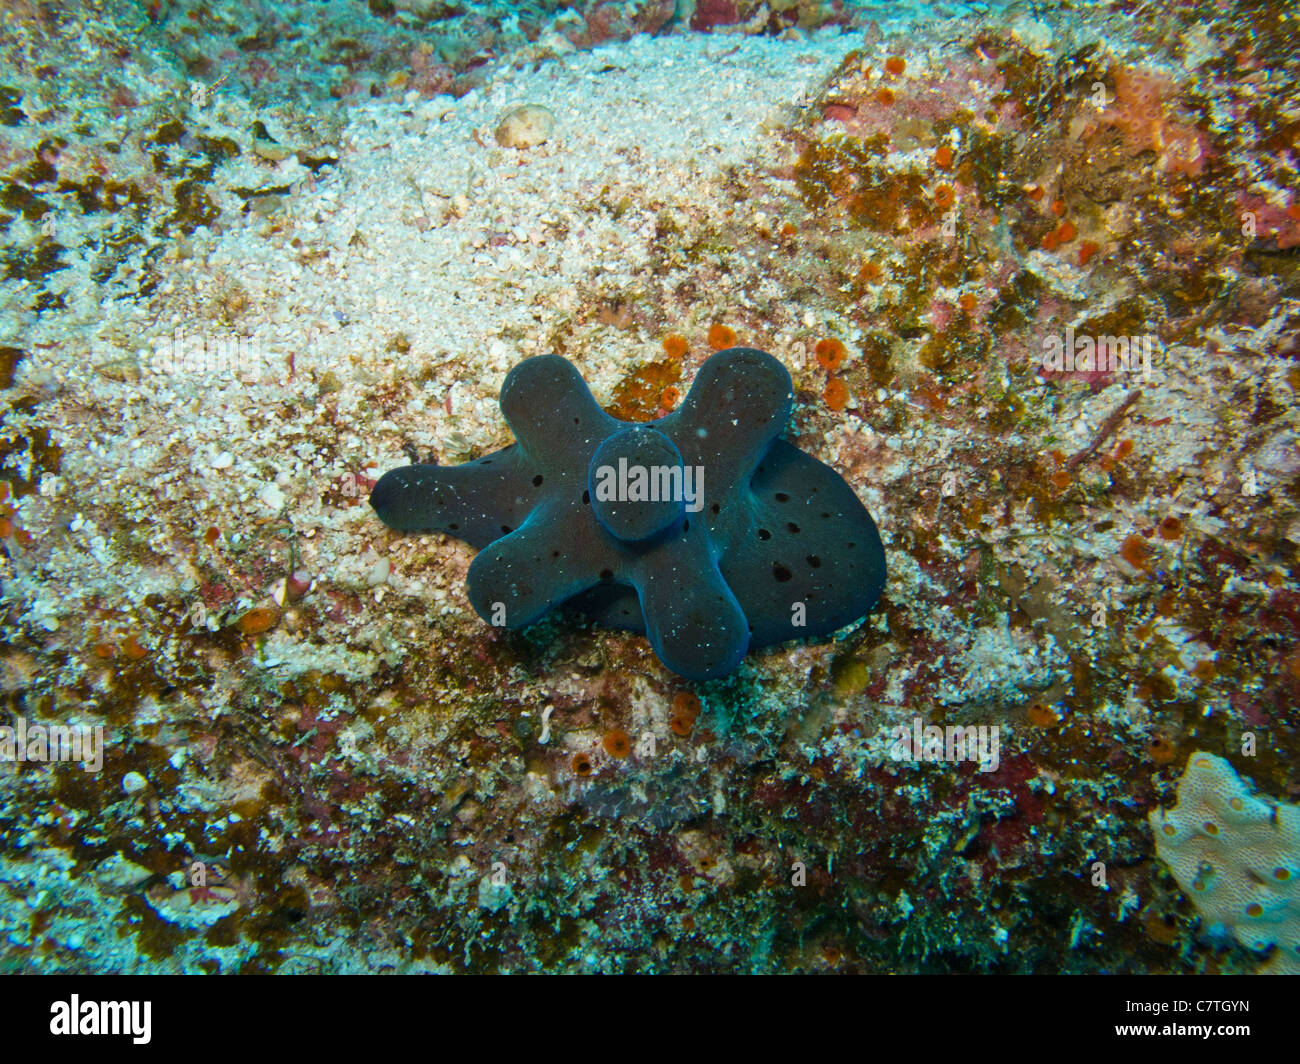 La Hiby Lamellarid, cinco cuernos univalves encontrados en arrecifes de coral Foto de stock